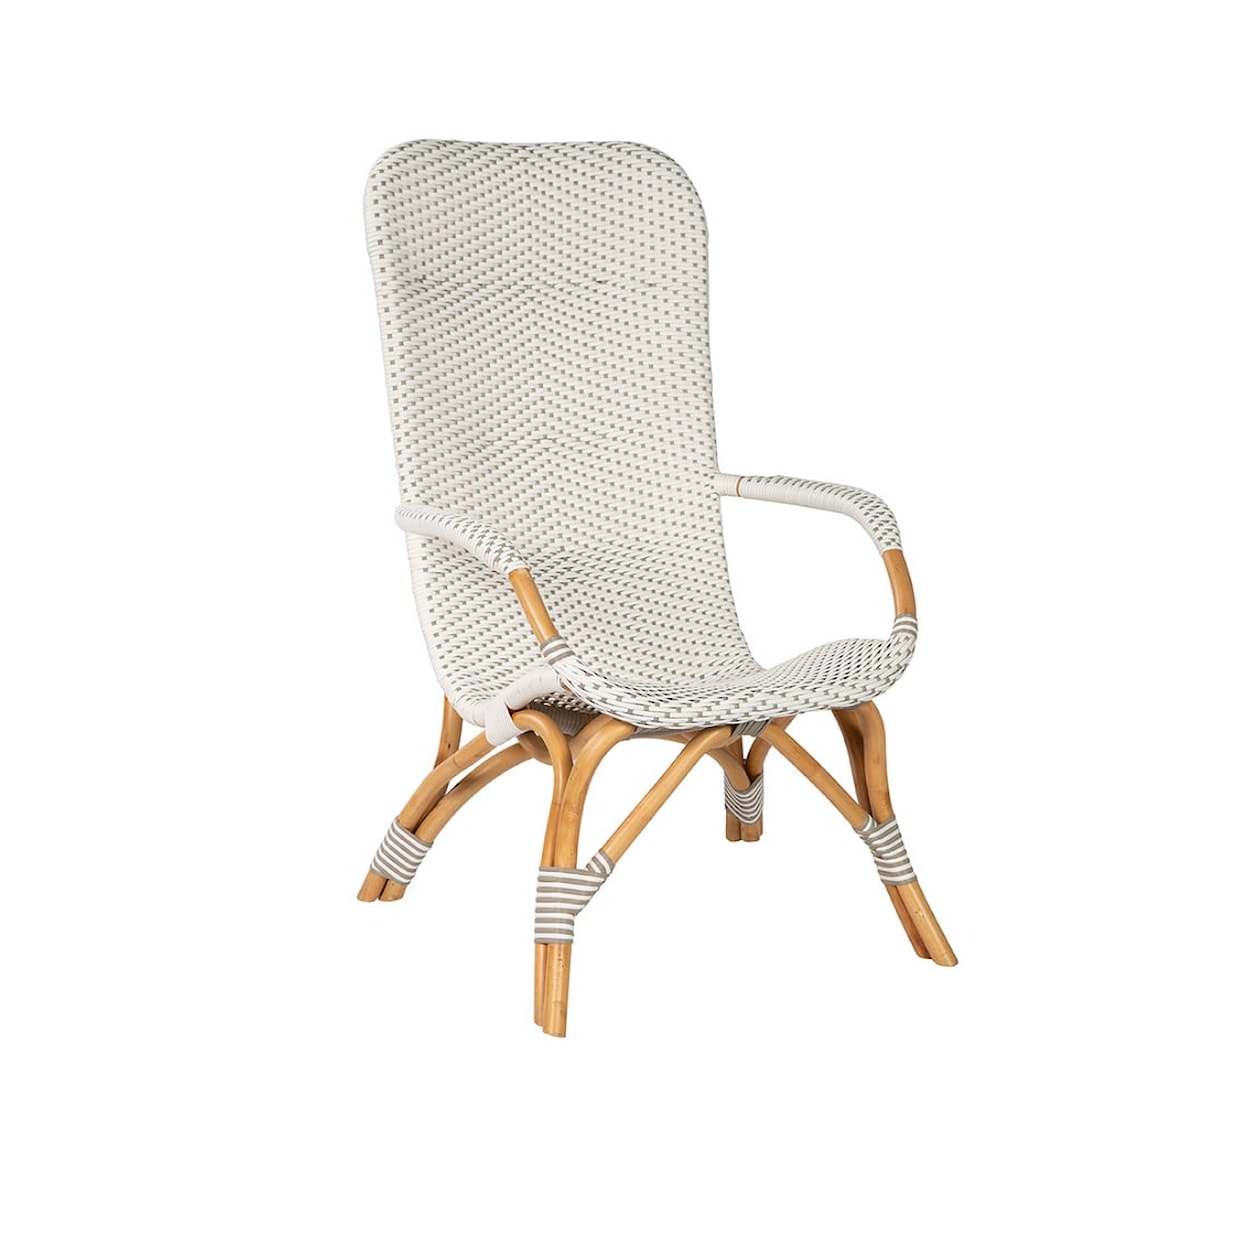 Furniture Classics Furniture Classics Lounge Chair